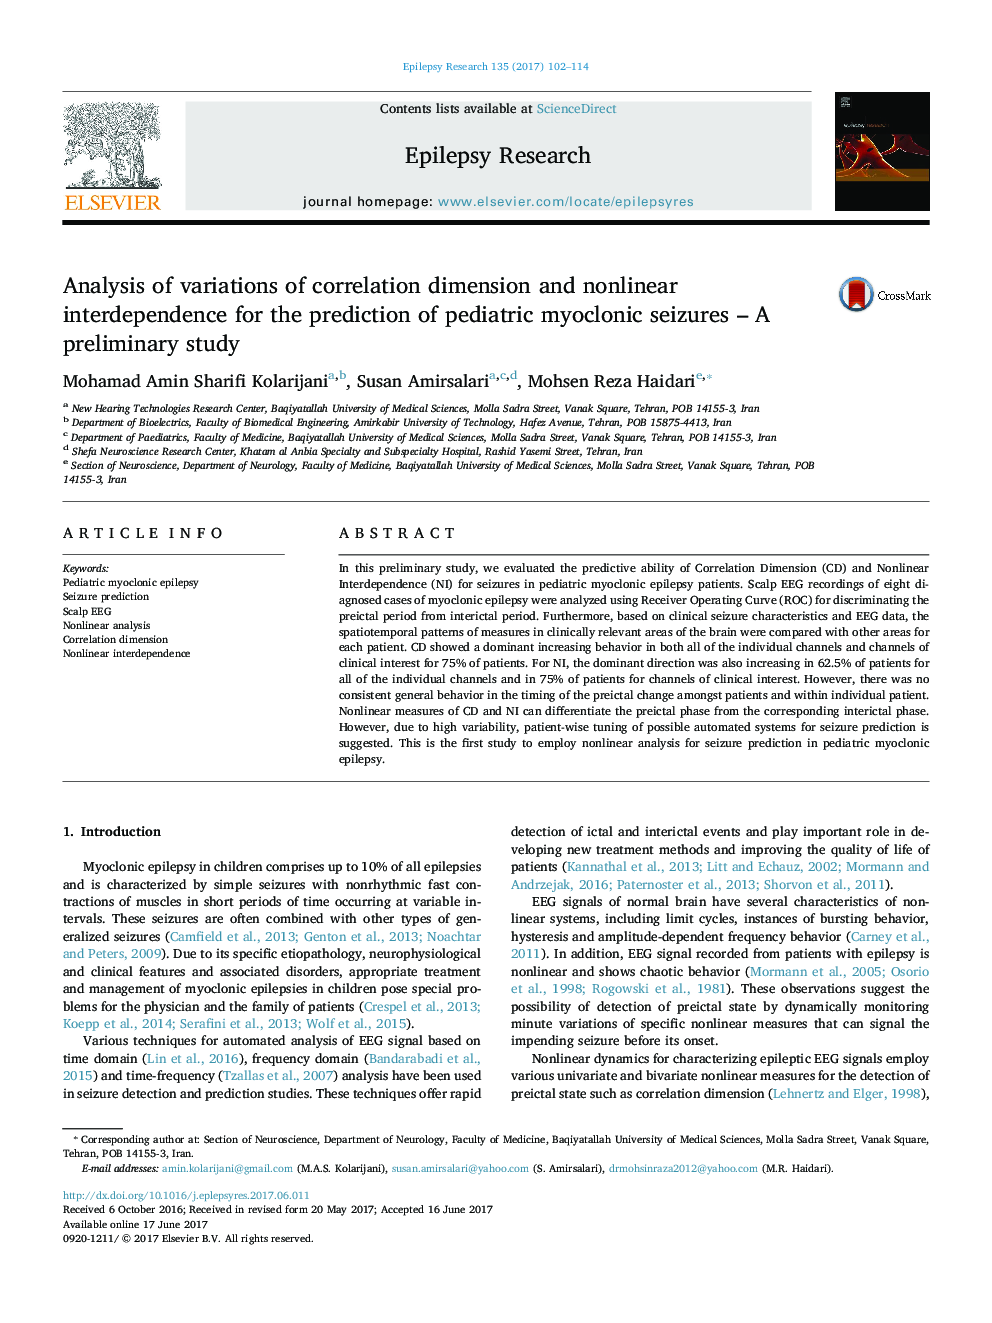 تجزیه و تحلیل تغییرات ابعاد همبستگی و وابستگی غیر خطی برای پیش بینی تشنج های میوکولونیک کودکان - یک مطالعه مقدماتی 